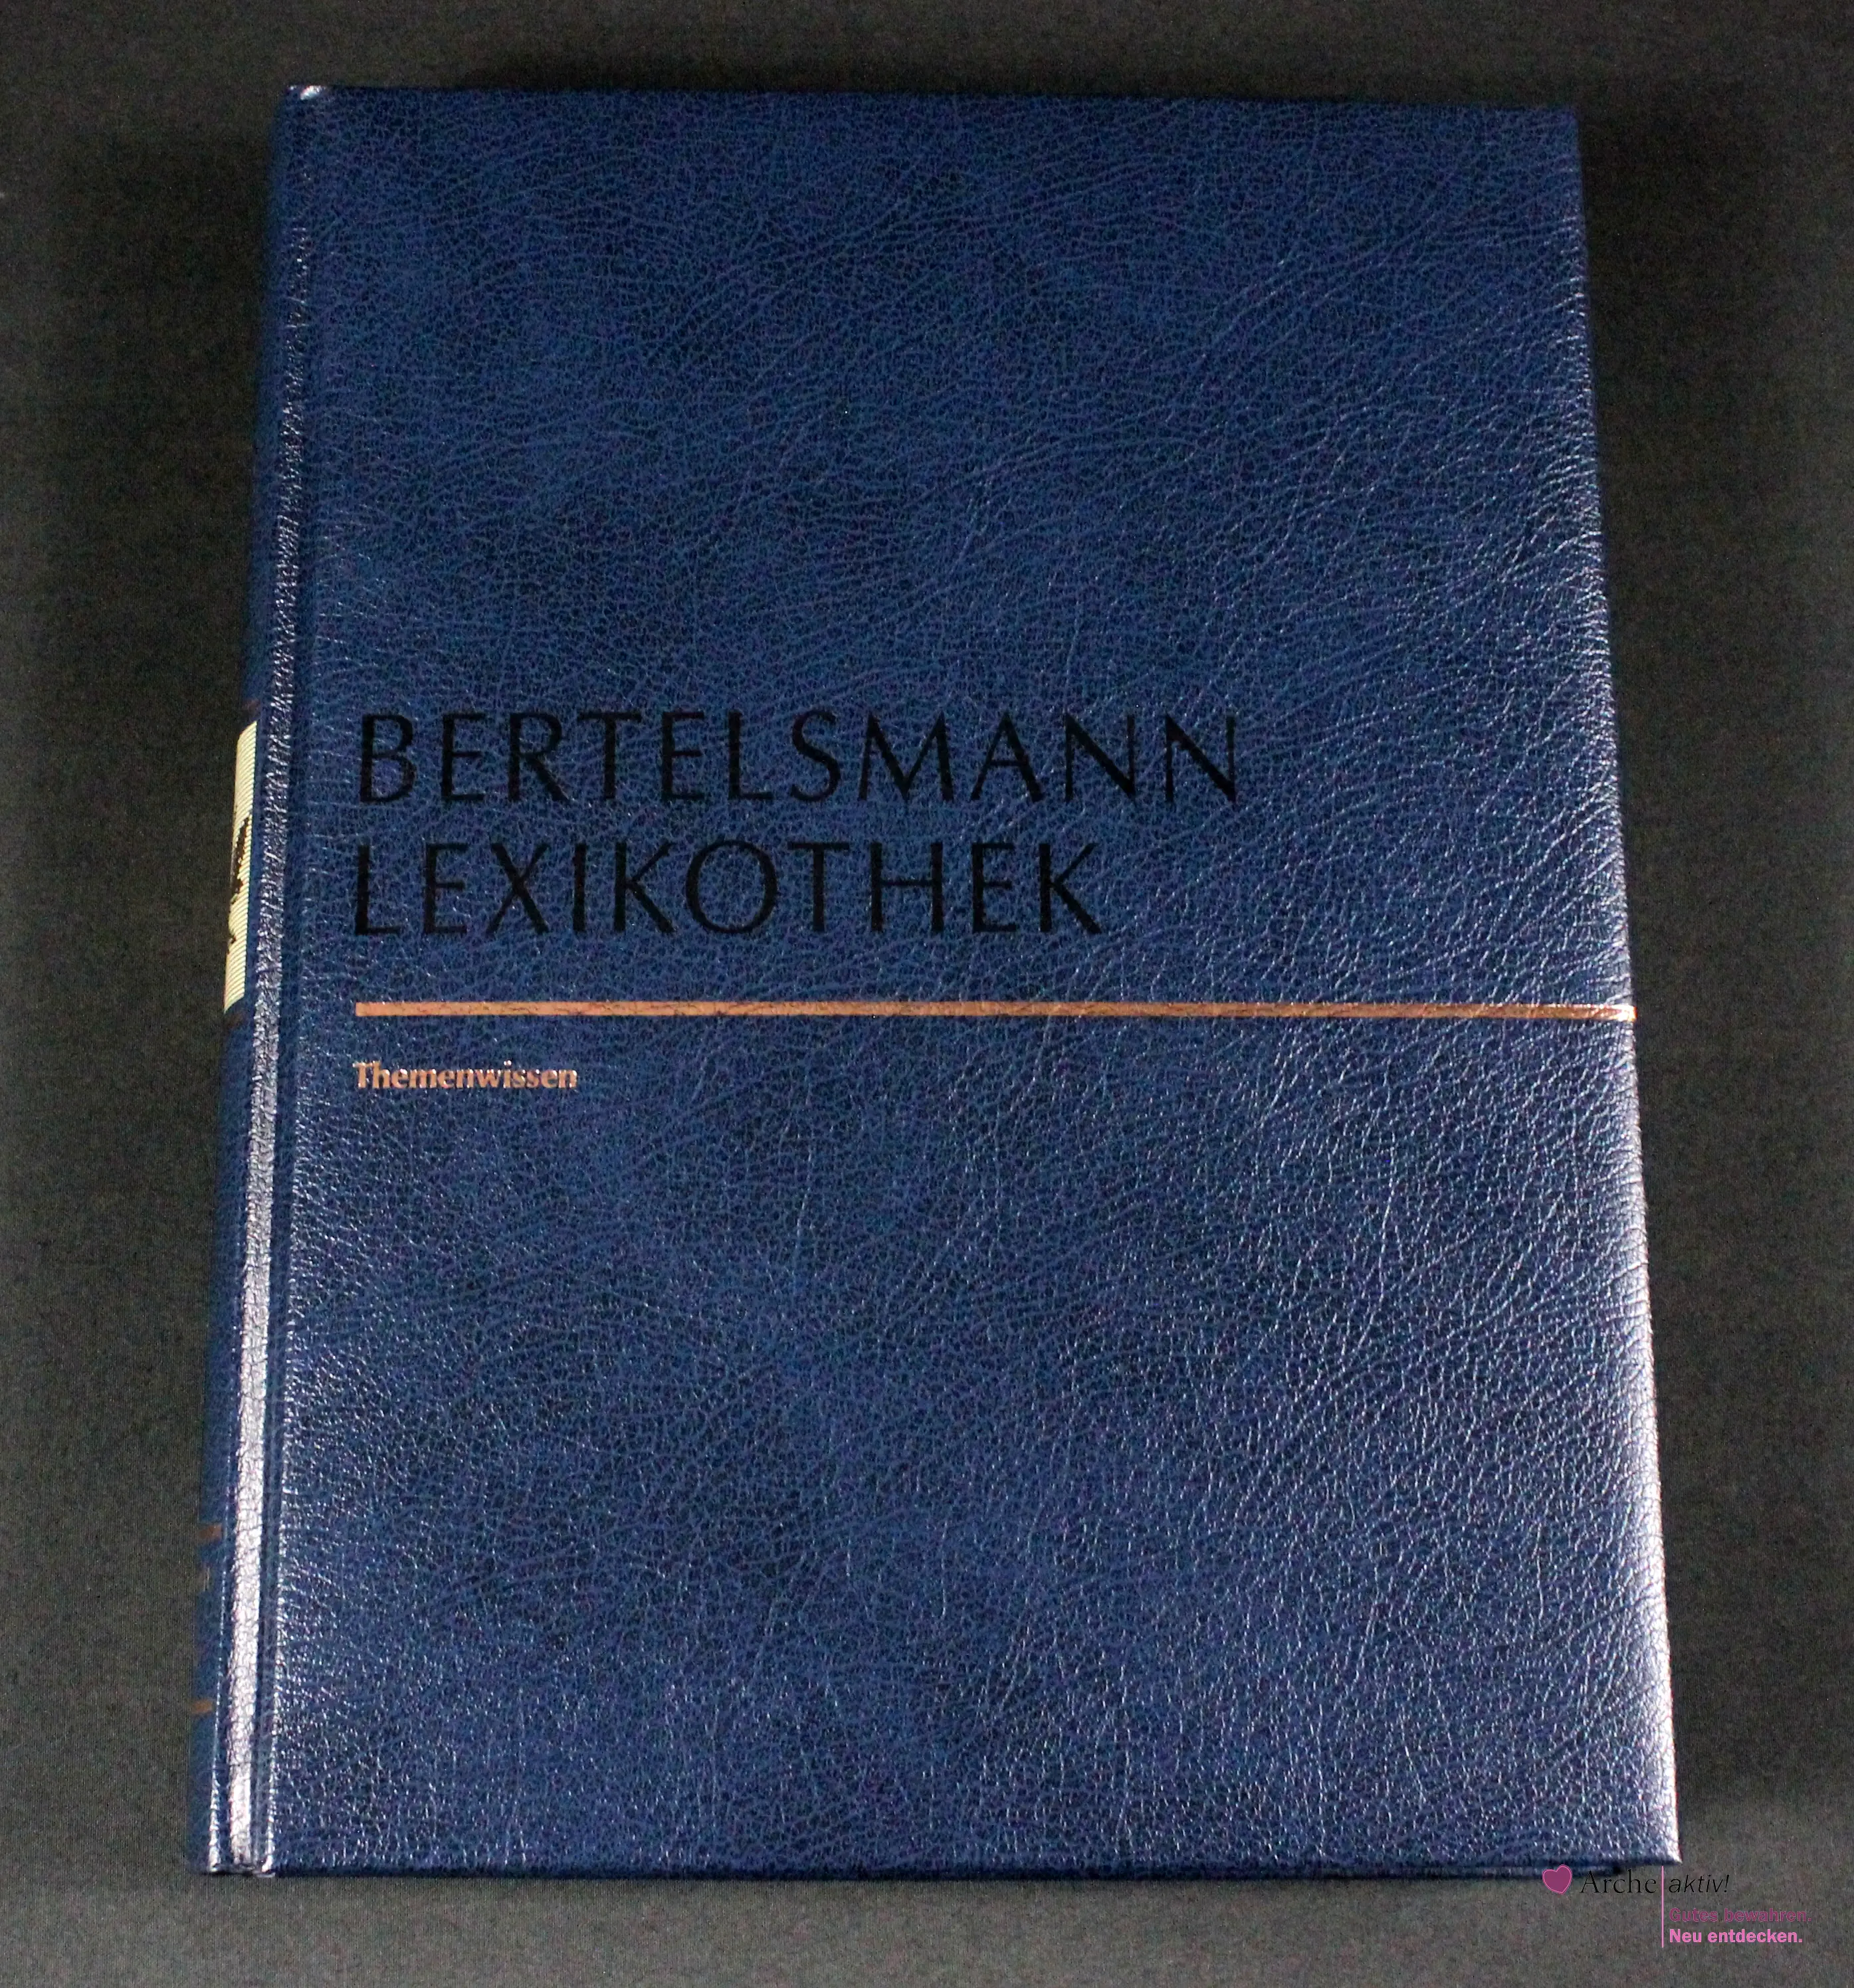 Bertelsmann Lexikothek - Themenwissen - Wunderwelt der Pflanzen, gebraucht